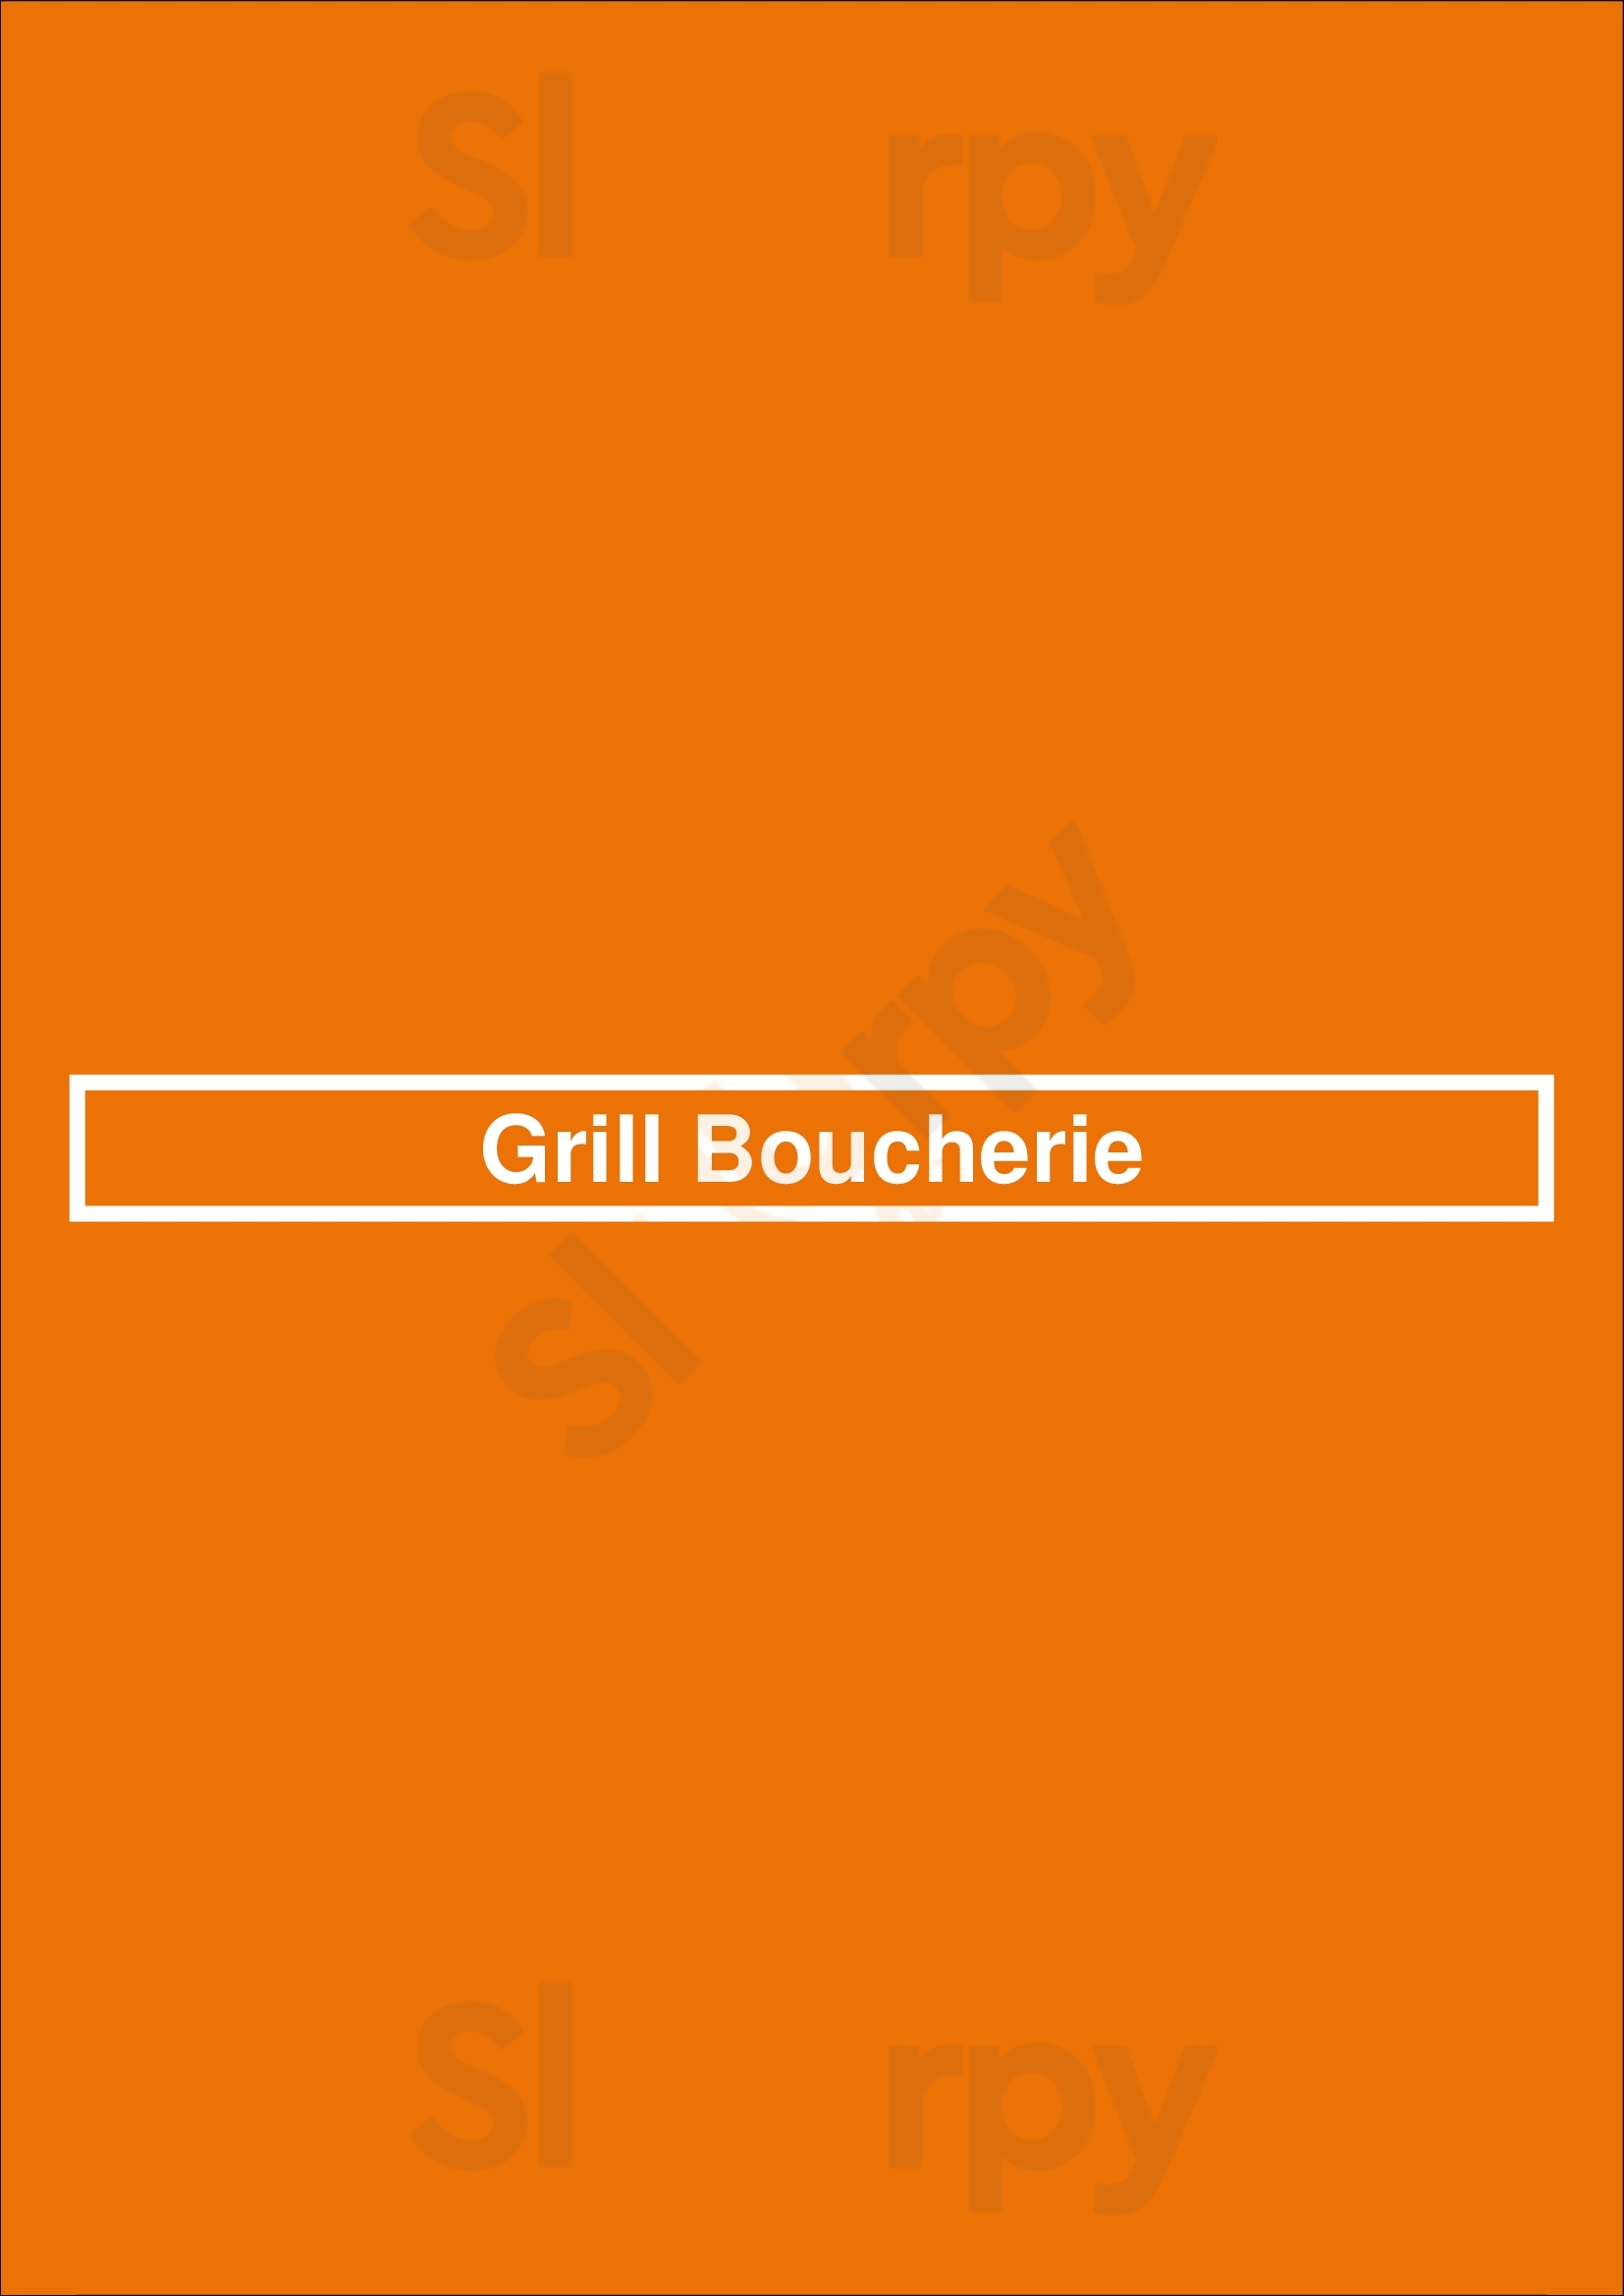 Grill Boucherie Marseille Menu - 1